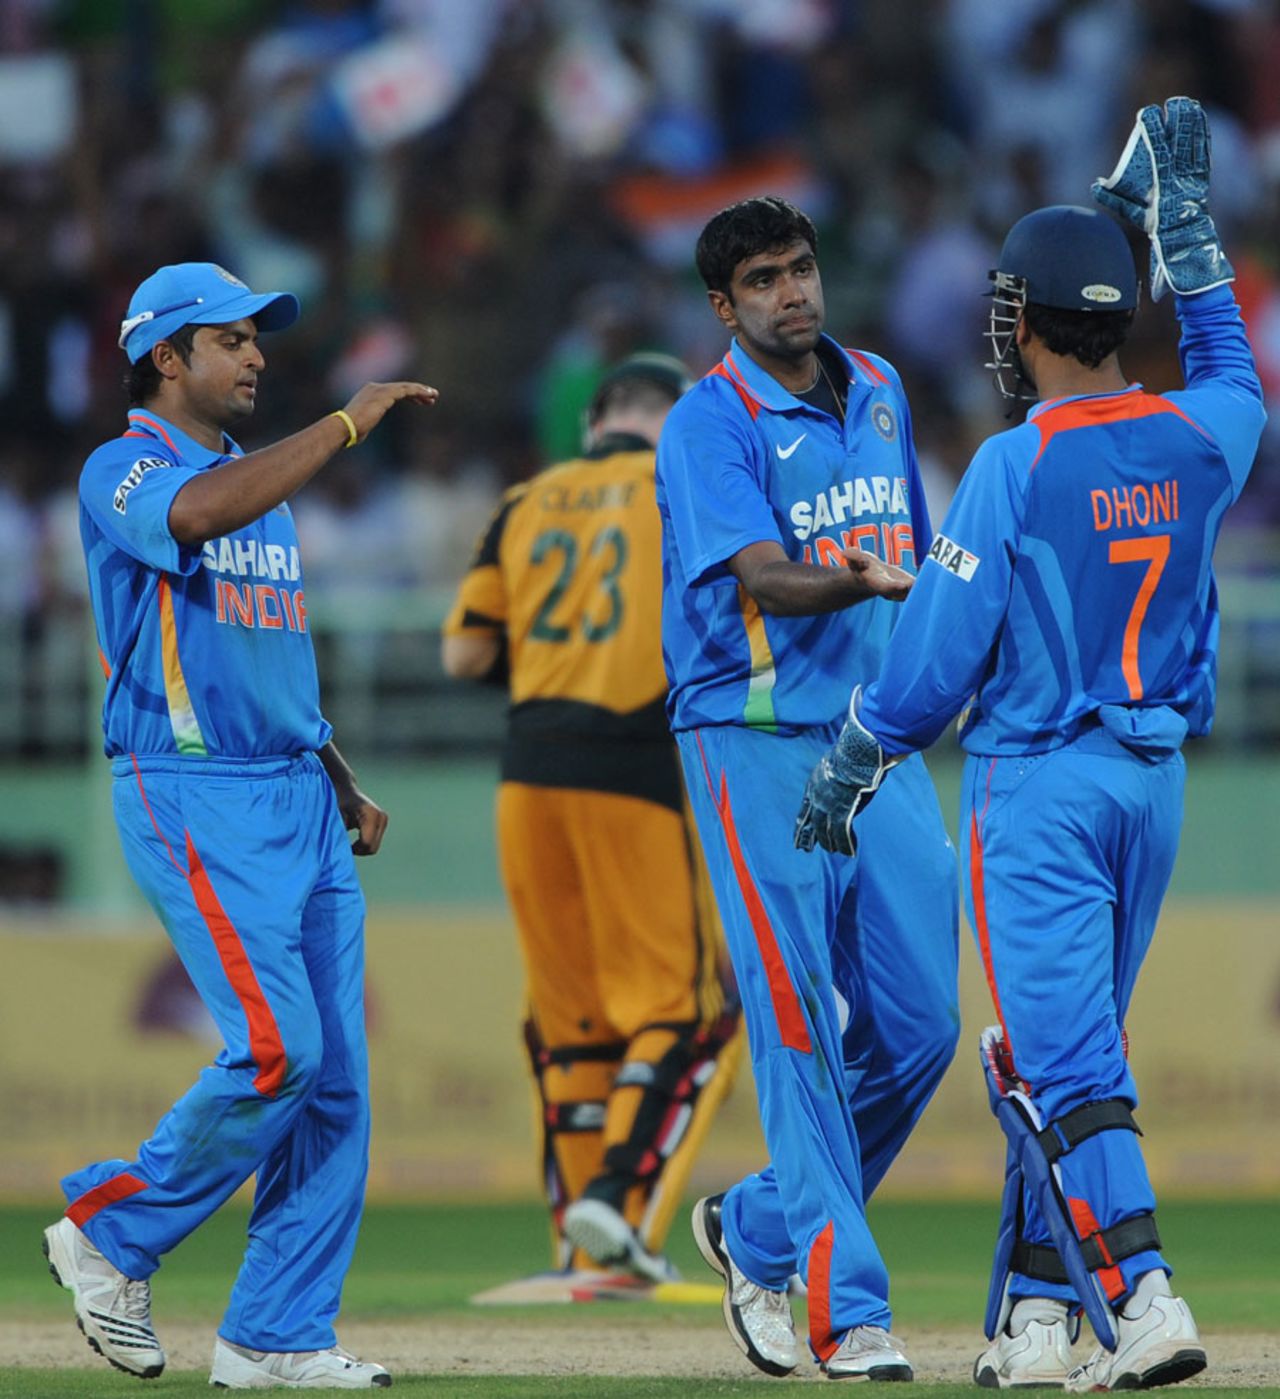 R Ashwin celebrates after sending Michael Hussey back, India v Australia, 2nd ODI, Visakhapatnam, October 20, 2010